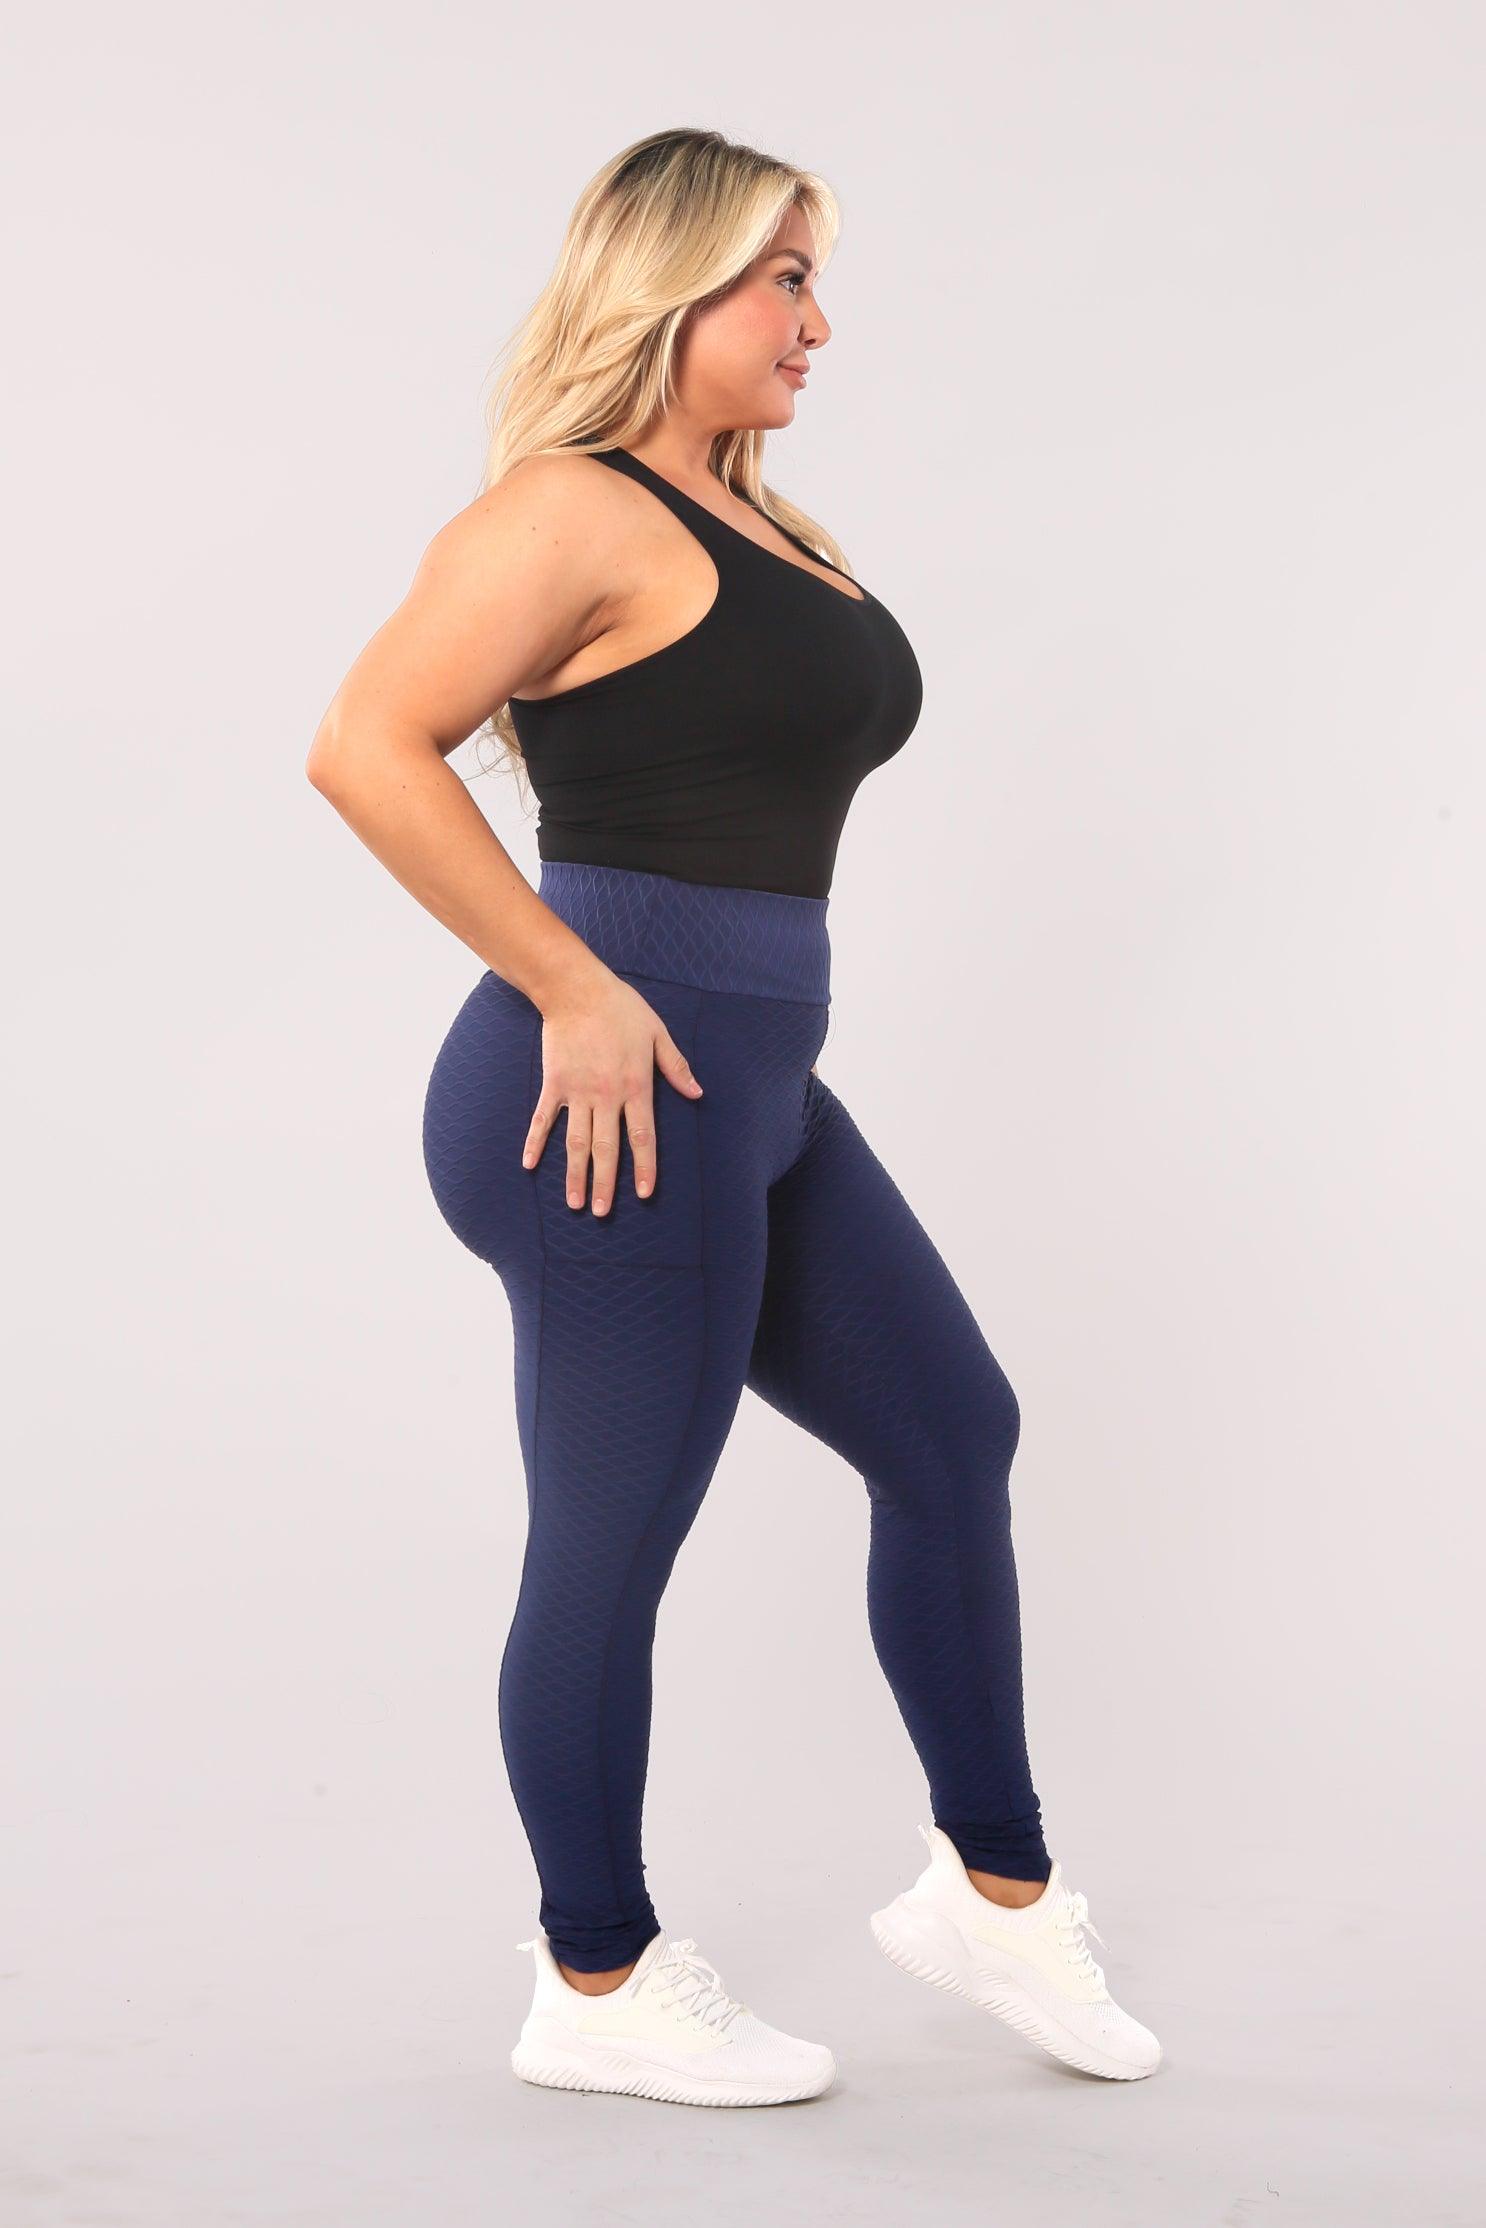 SHOSHO High Waist Tummy Control Pockets Gym Activewear Yoga